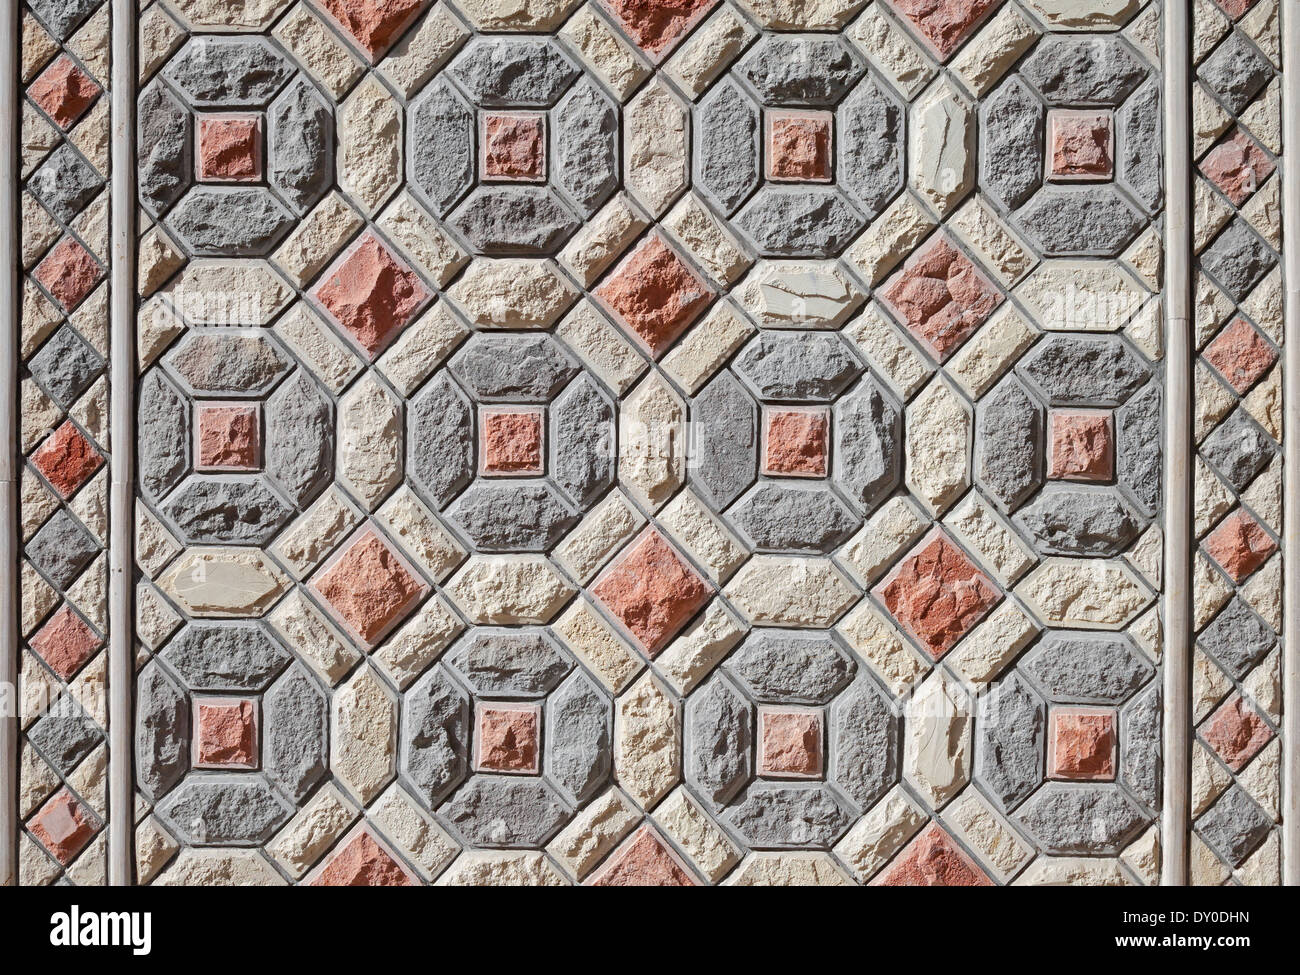 Hintergrundtextur von bunten orientalischen Steinmauer Mosaik-Muster Stockfoto